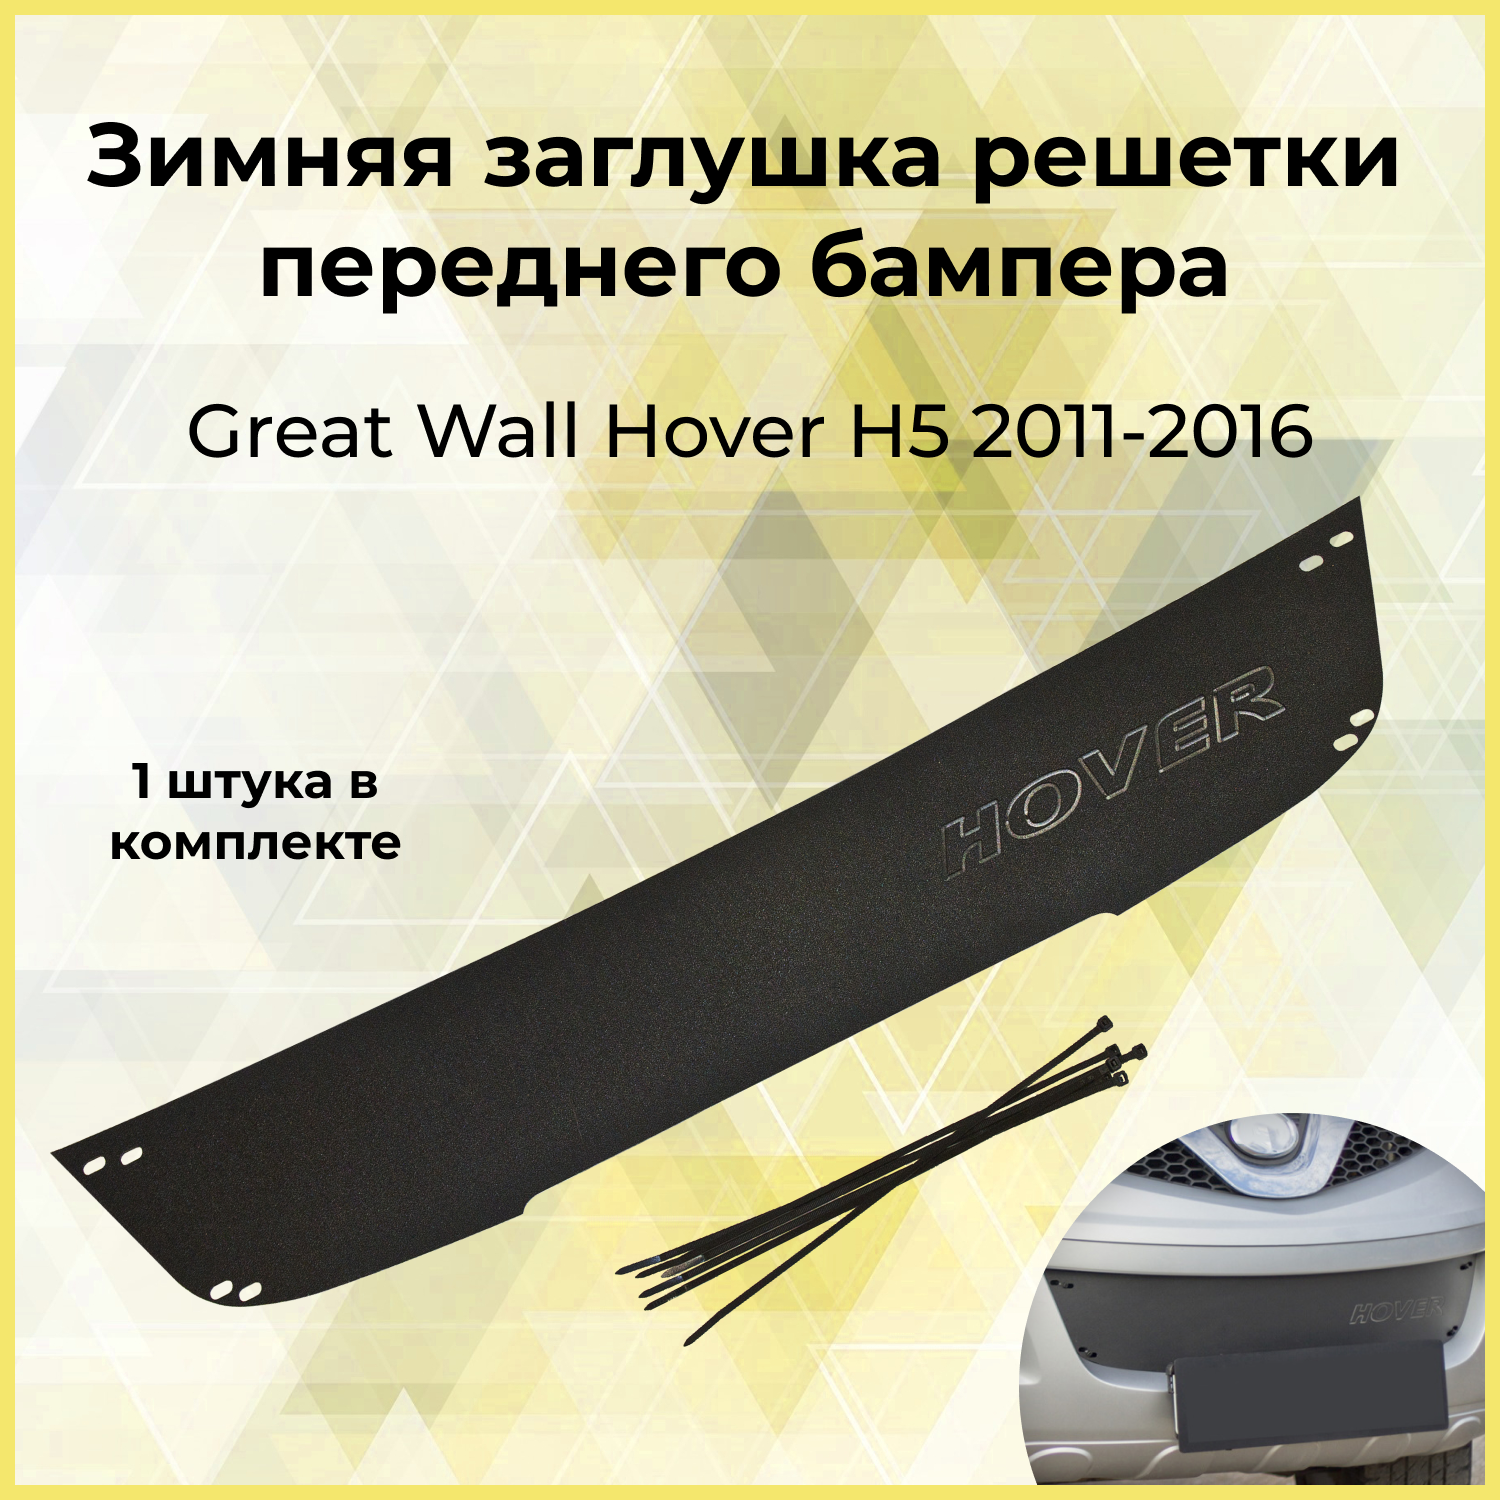 Зимняя заглушка решетки переднего бампера для GREAT WALL Hover H5 2011-2016, шагрень